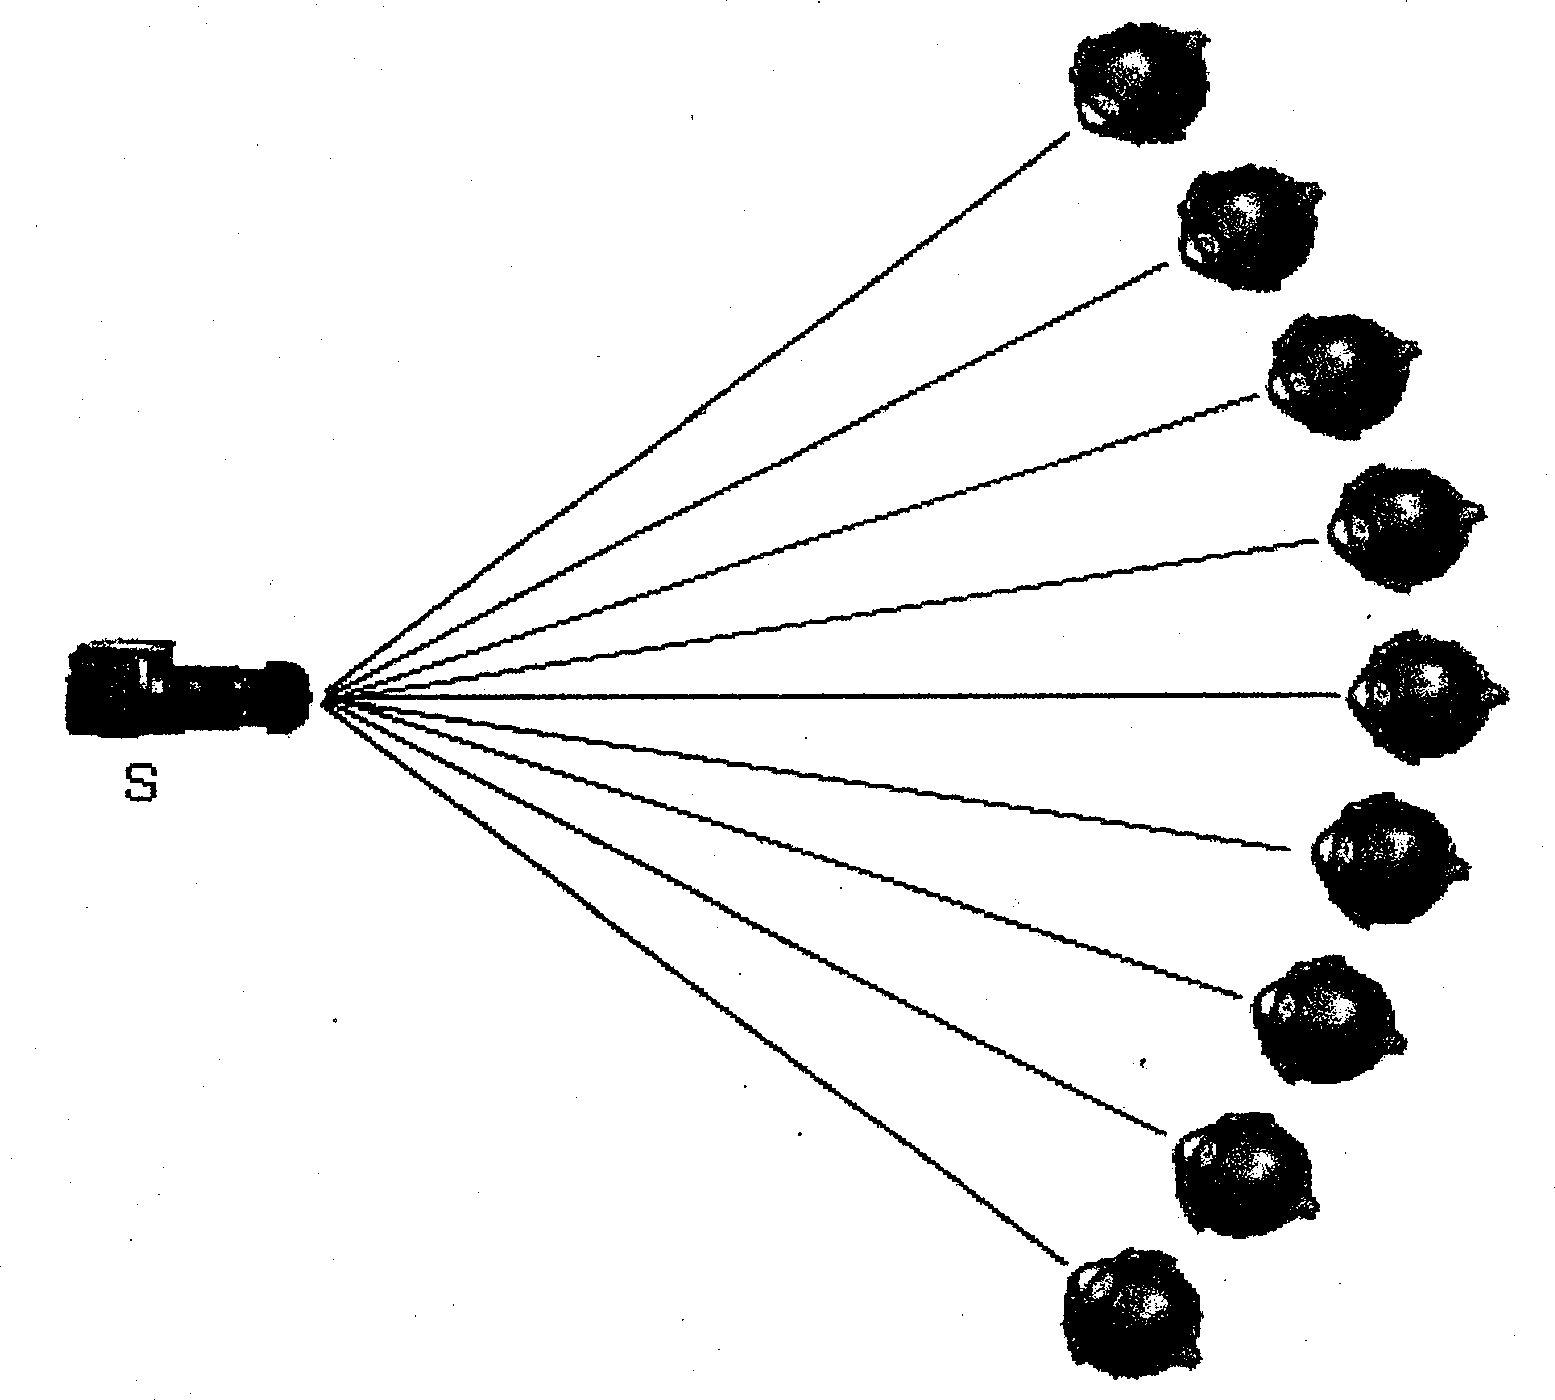 Three-dimensional modeling method for eyeball